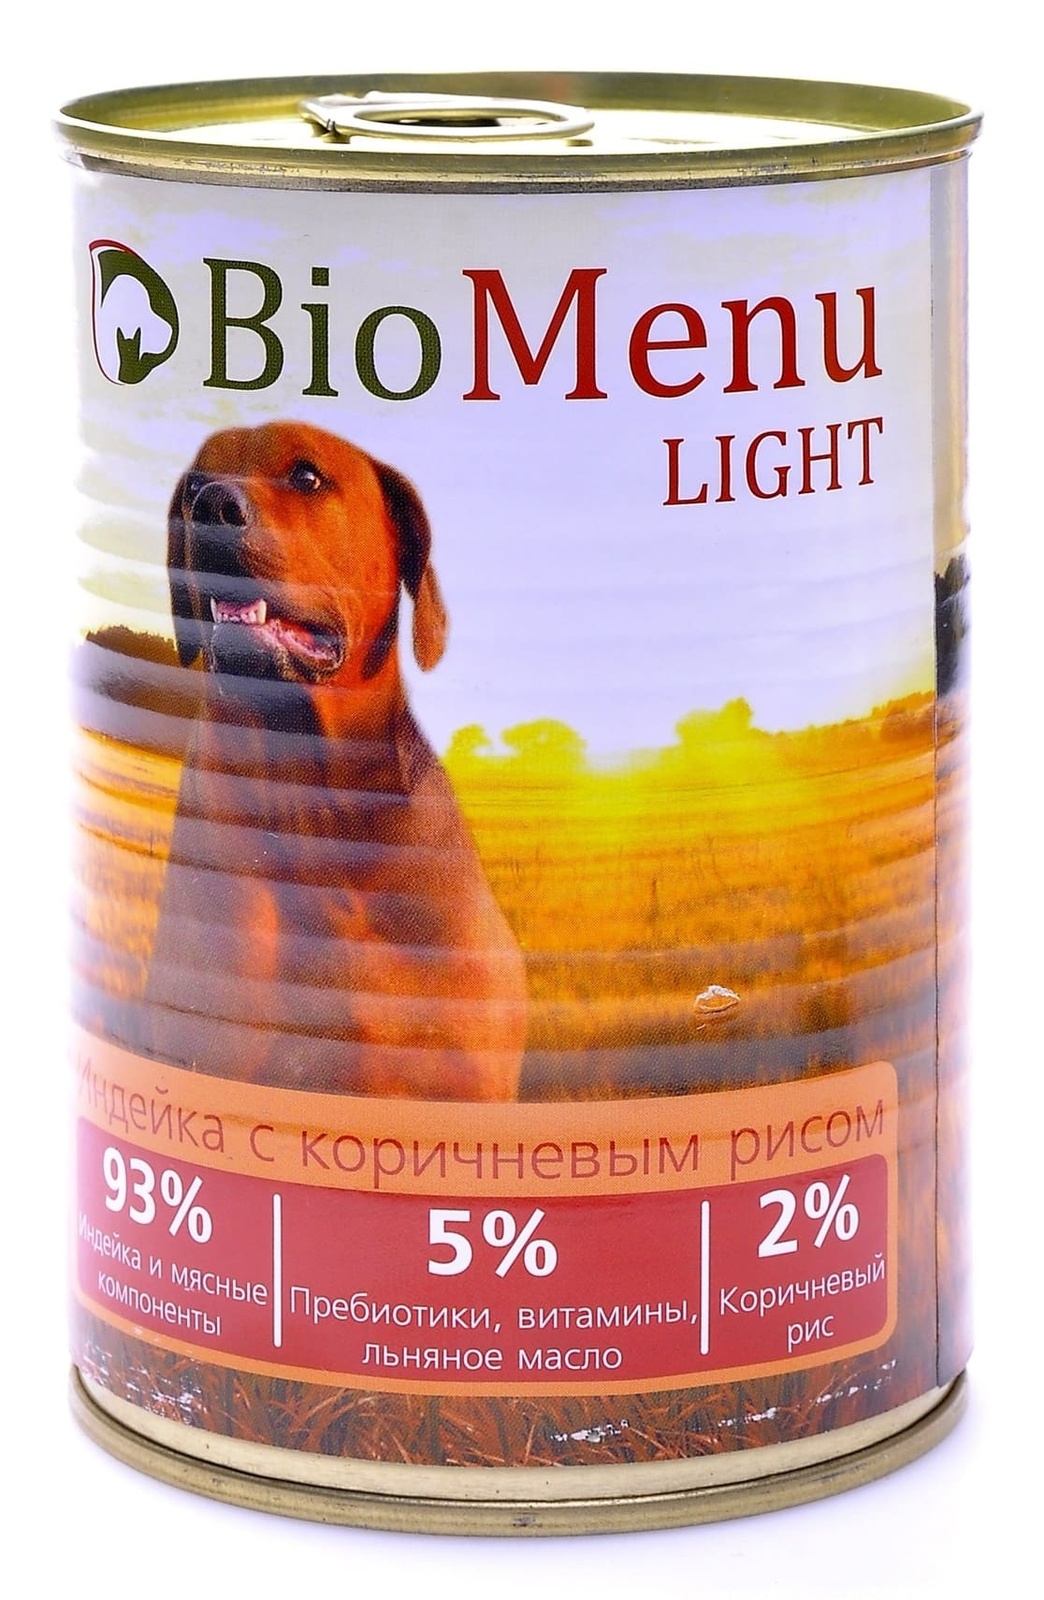 BioMenu BioMenu консервы для собак низкокалорийные с индейкой и коричневым рисом (100 г) biomenu biomenu консервы для собак с говядиной 100 г